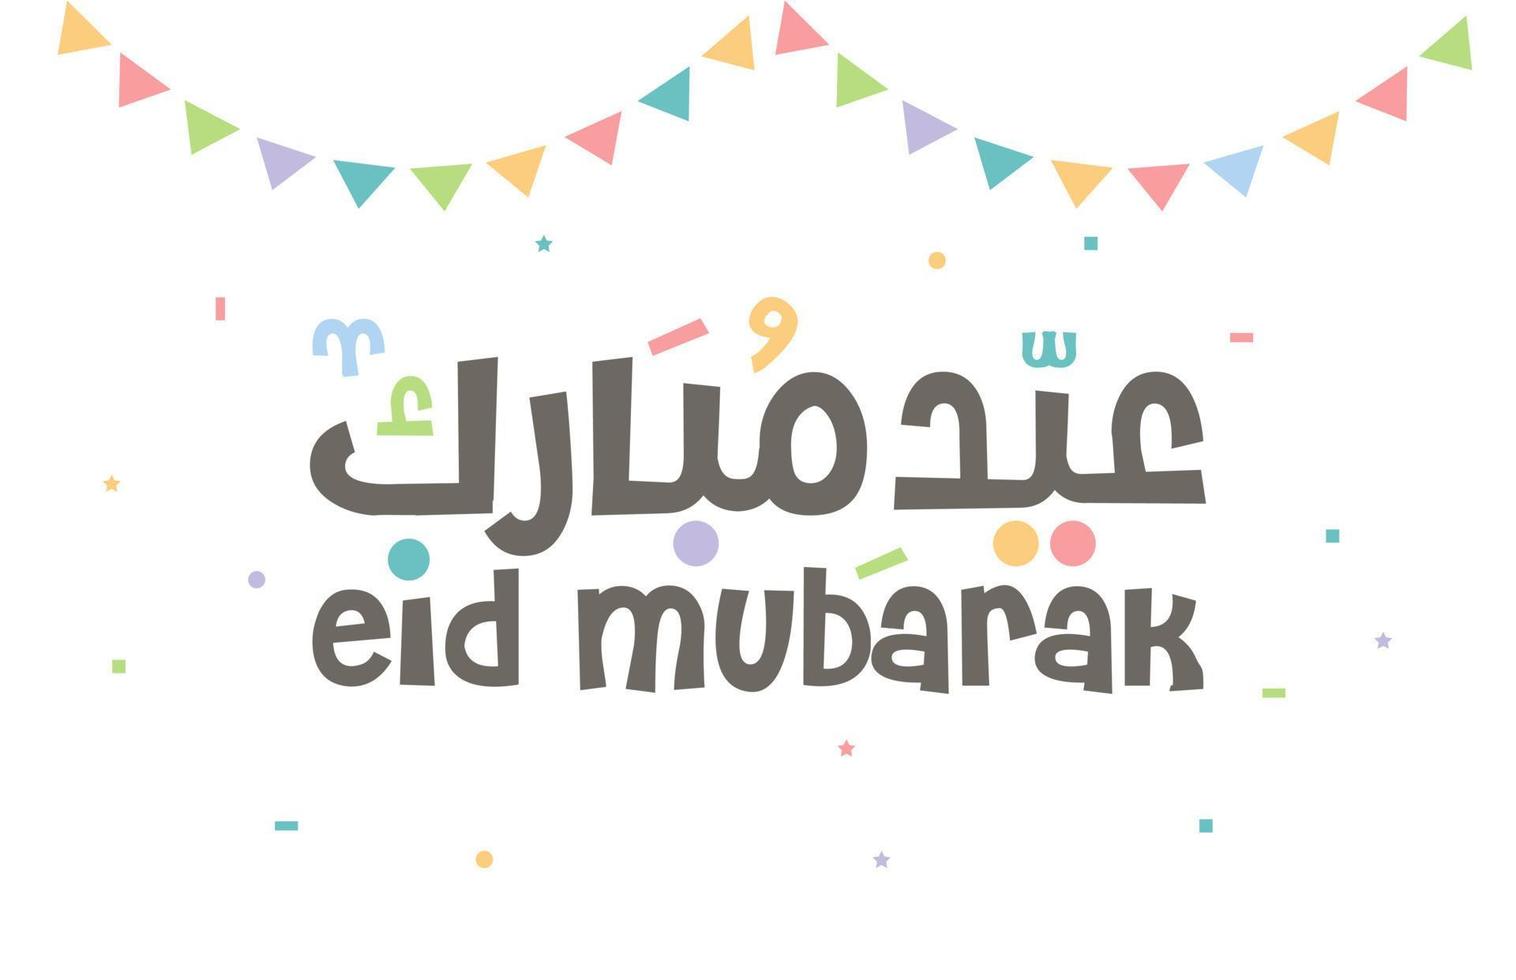 Eid Adha Mubarak Islamic greeting card in Arabic calligraphy vector. Eid al Fitr and Eid al Adha calligraphy vector. Happy eid vector illustration. Eid Adha, Eid Fitr calligraphy in Islamic art.